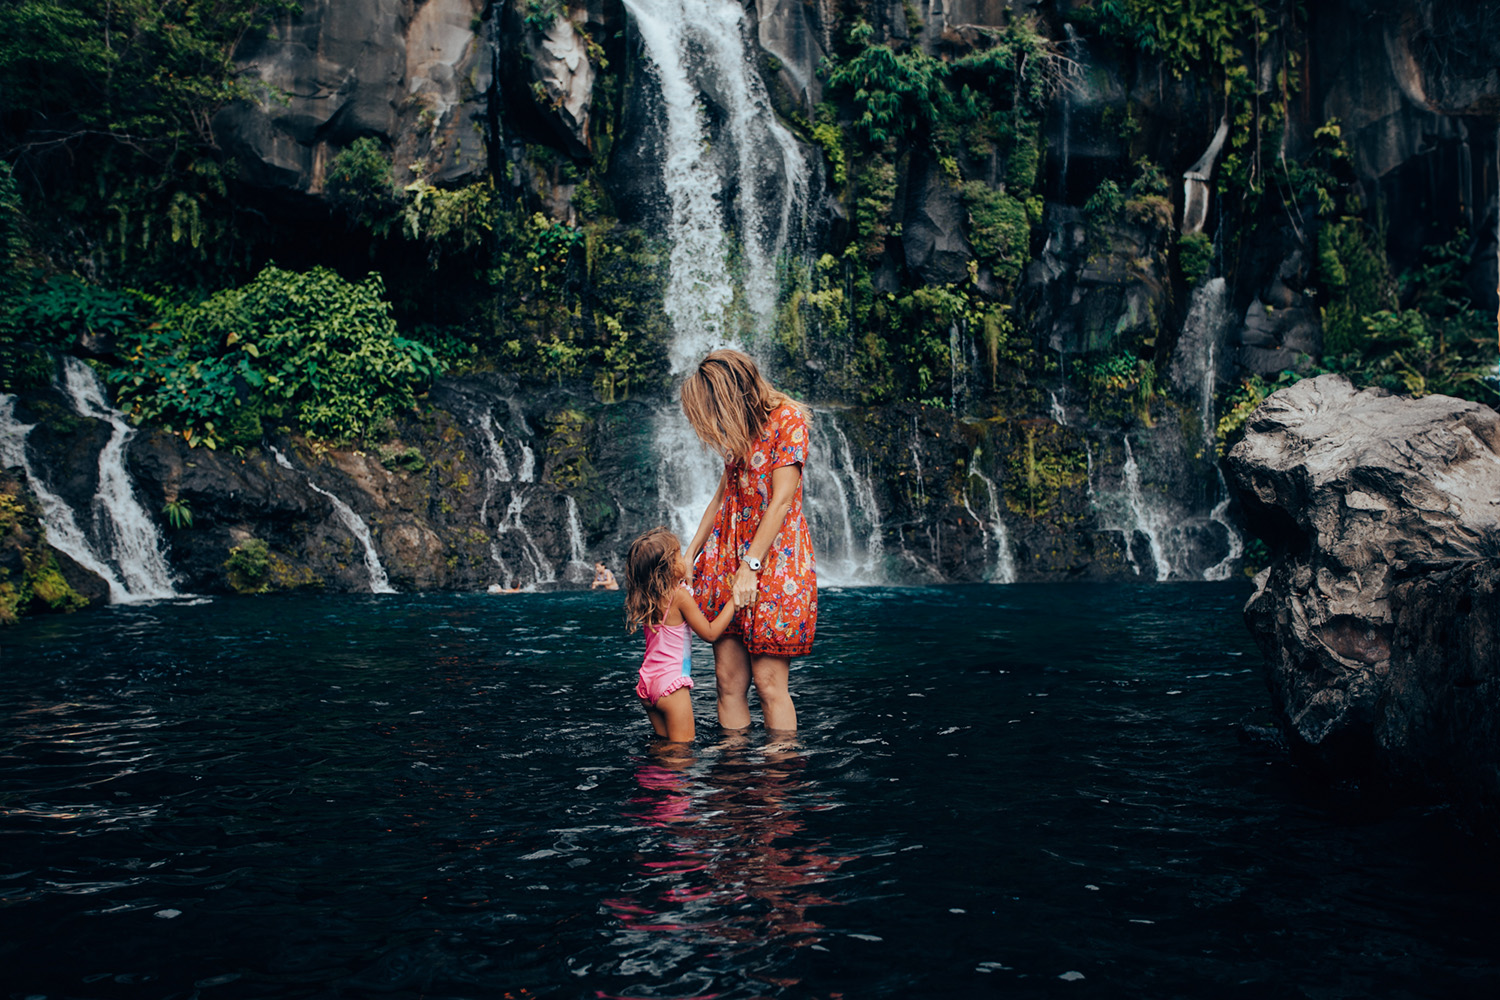 30 Endroits Instagrammables à l'Île de la Réunion en 2023 (Avec carte + photos !)